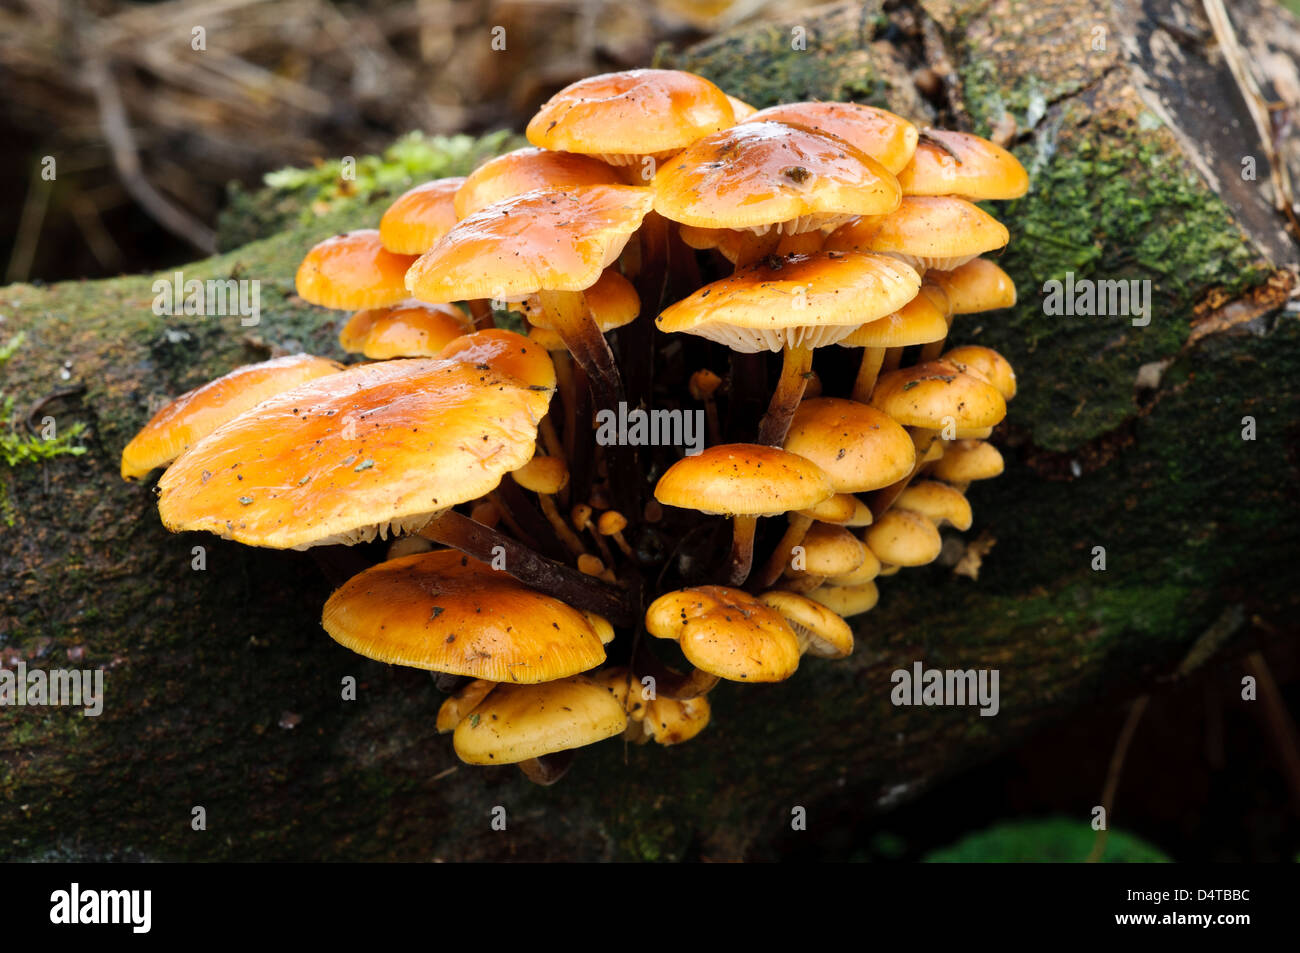 Un groupe de champignons la queue de velours (Colybie a) croissant sur le bois mort à Clumber Park, Nottinghamshire. Octobre. Banque D'Images